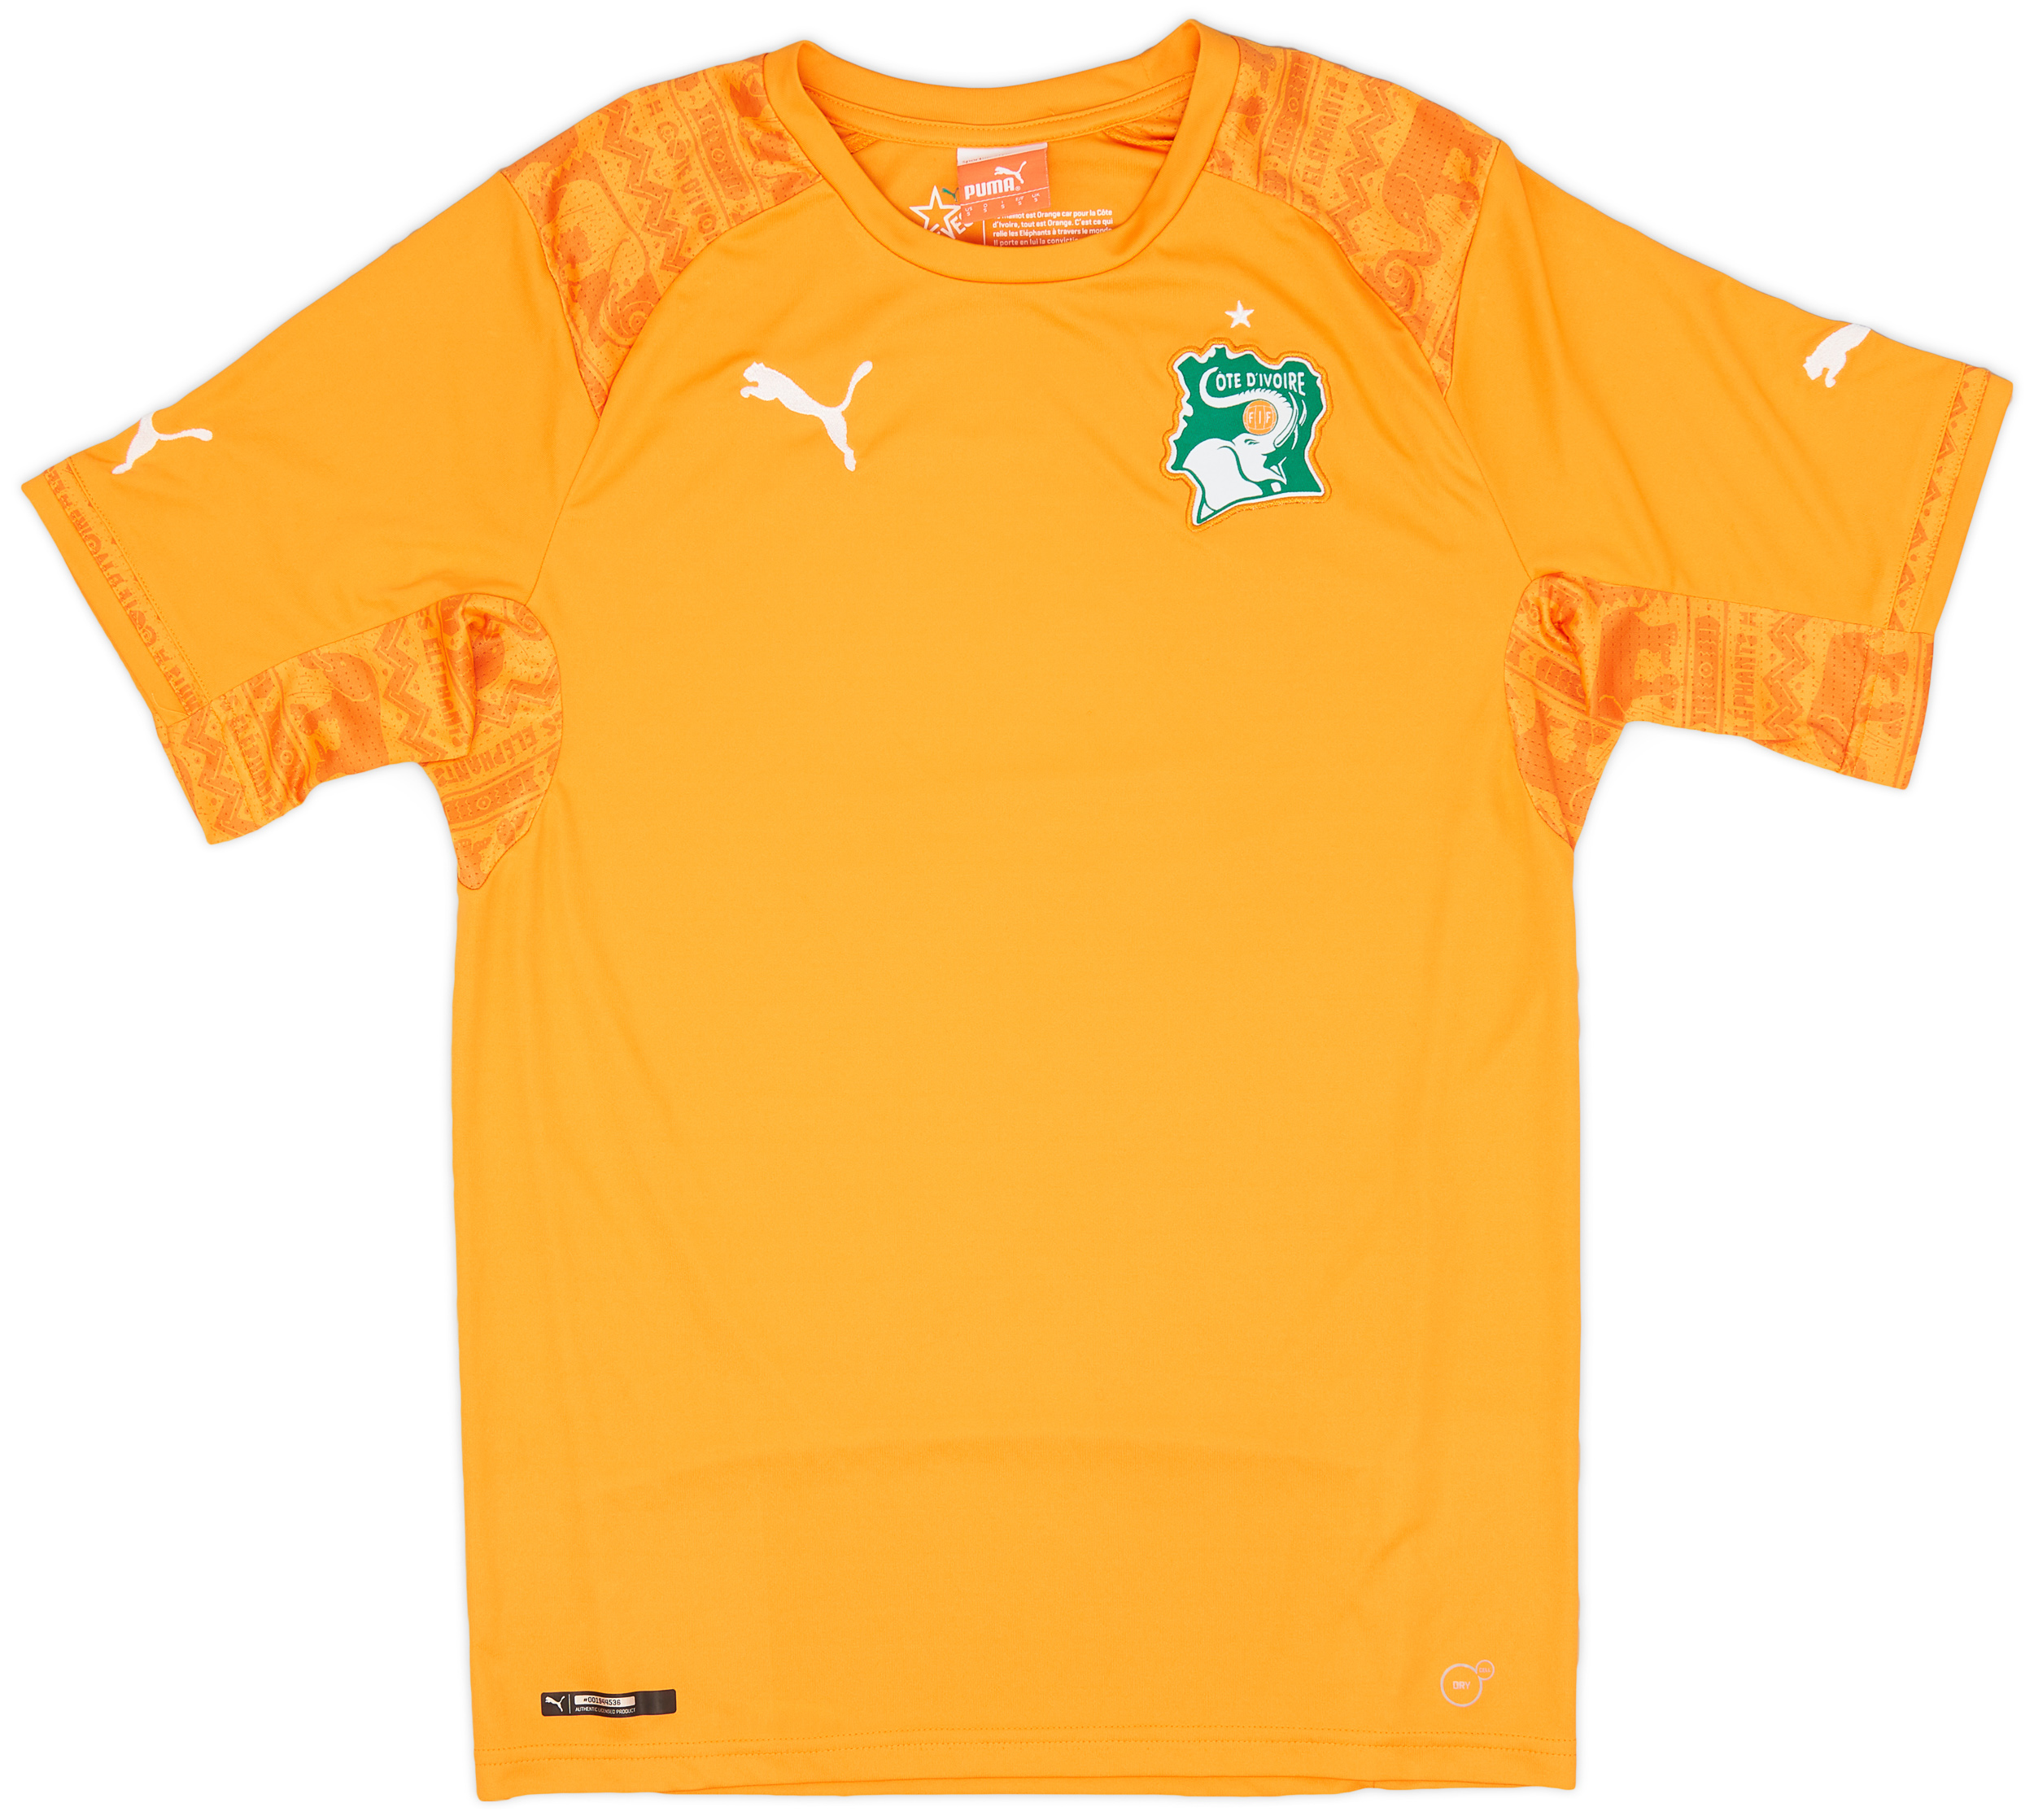 2014-16 Ivory Coast Home Shirt - 9/10 - ()